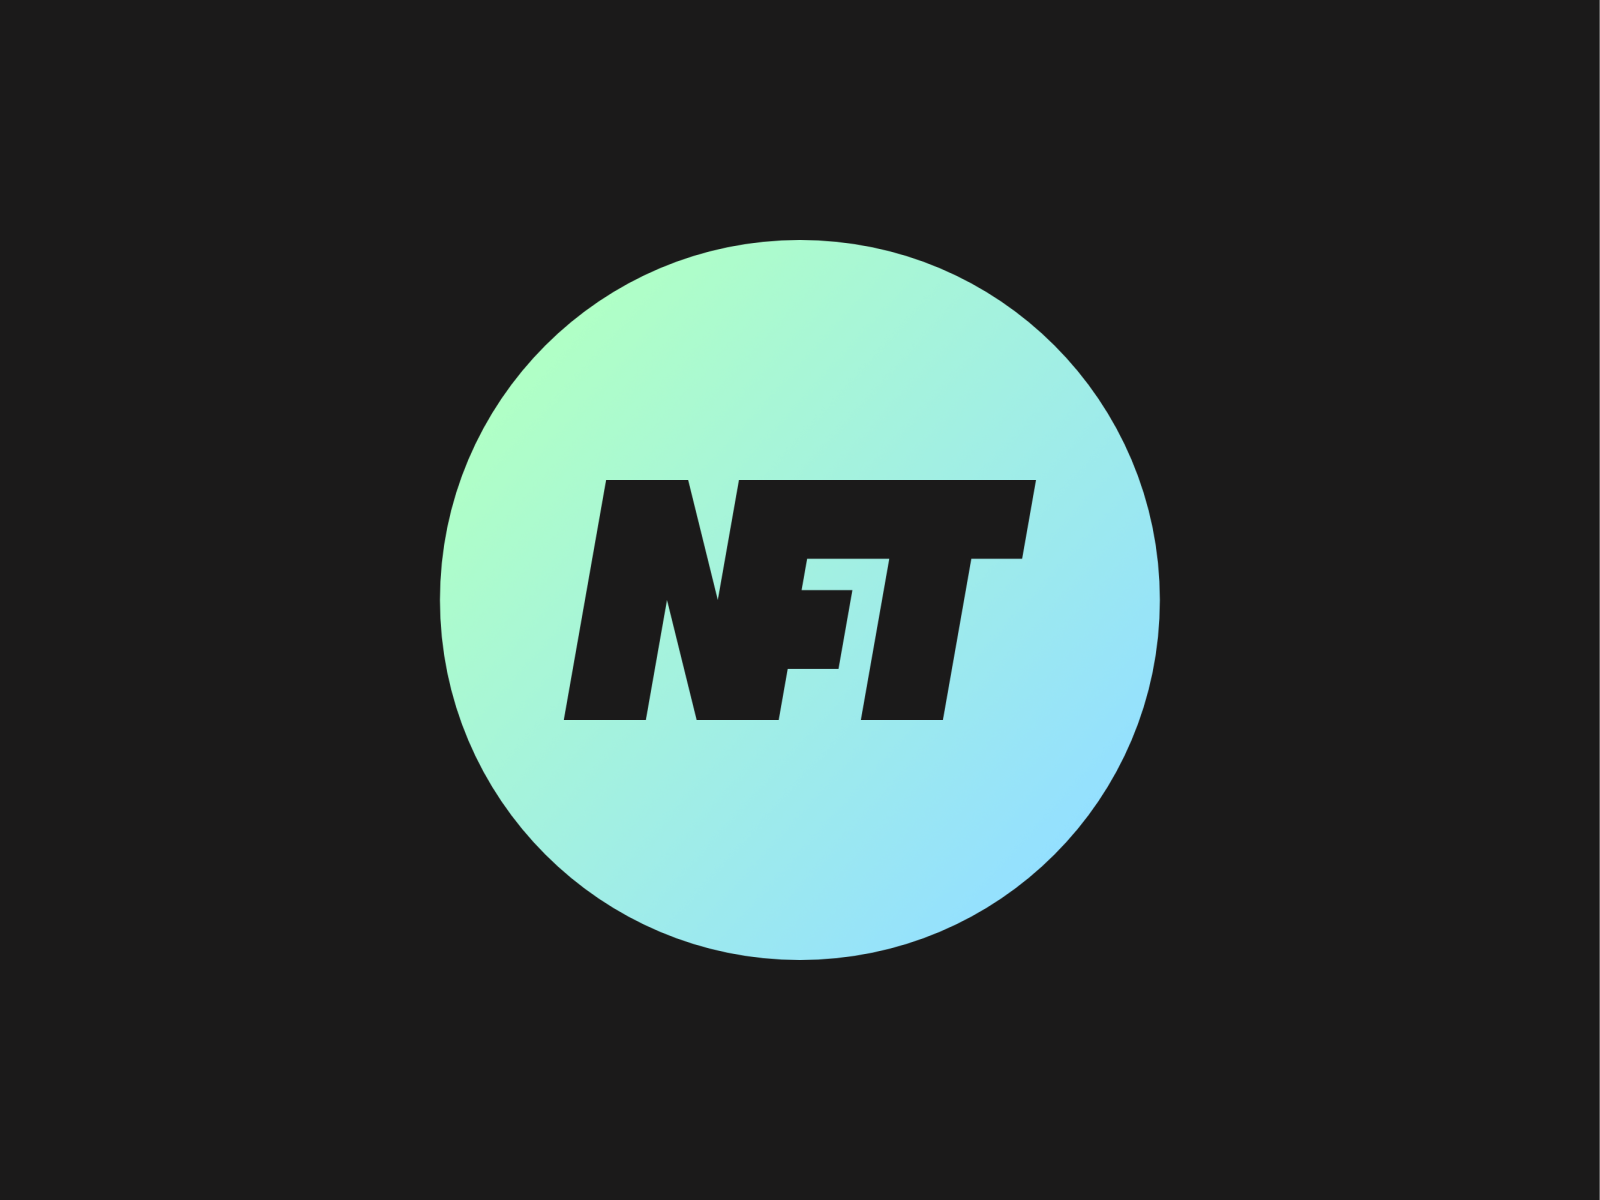 NFT - logo by Daniel Rotter on Dribbble